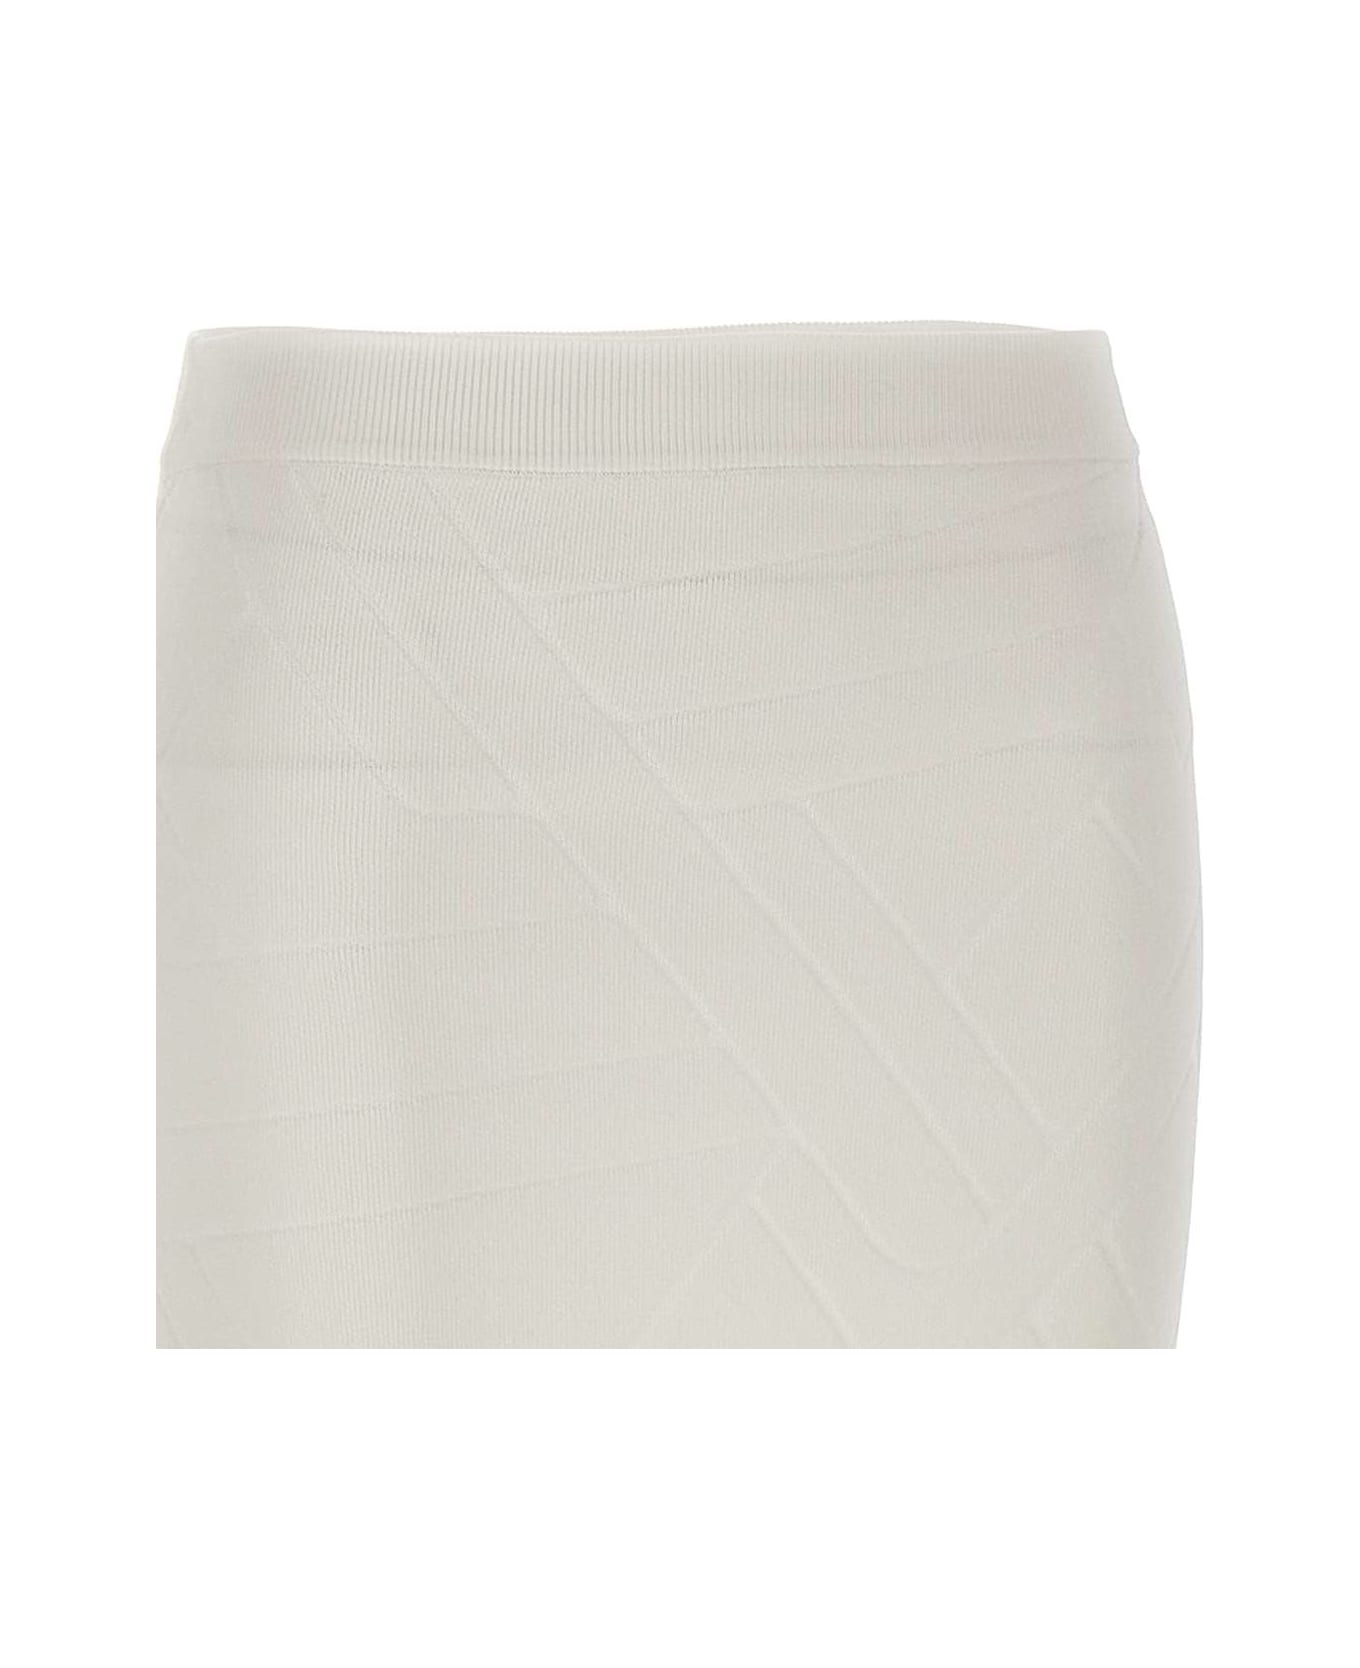 IRO "flaga" Skirt - WHITE